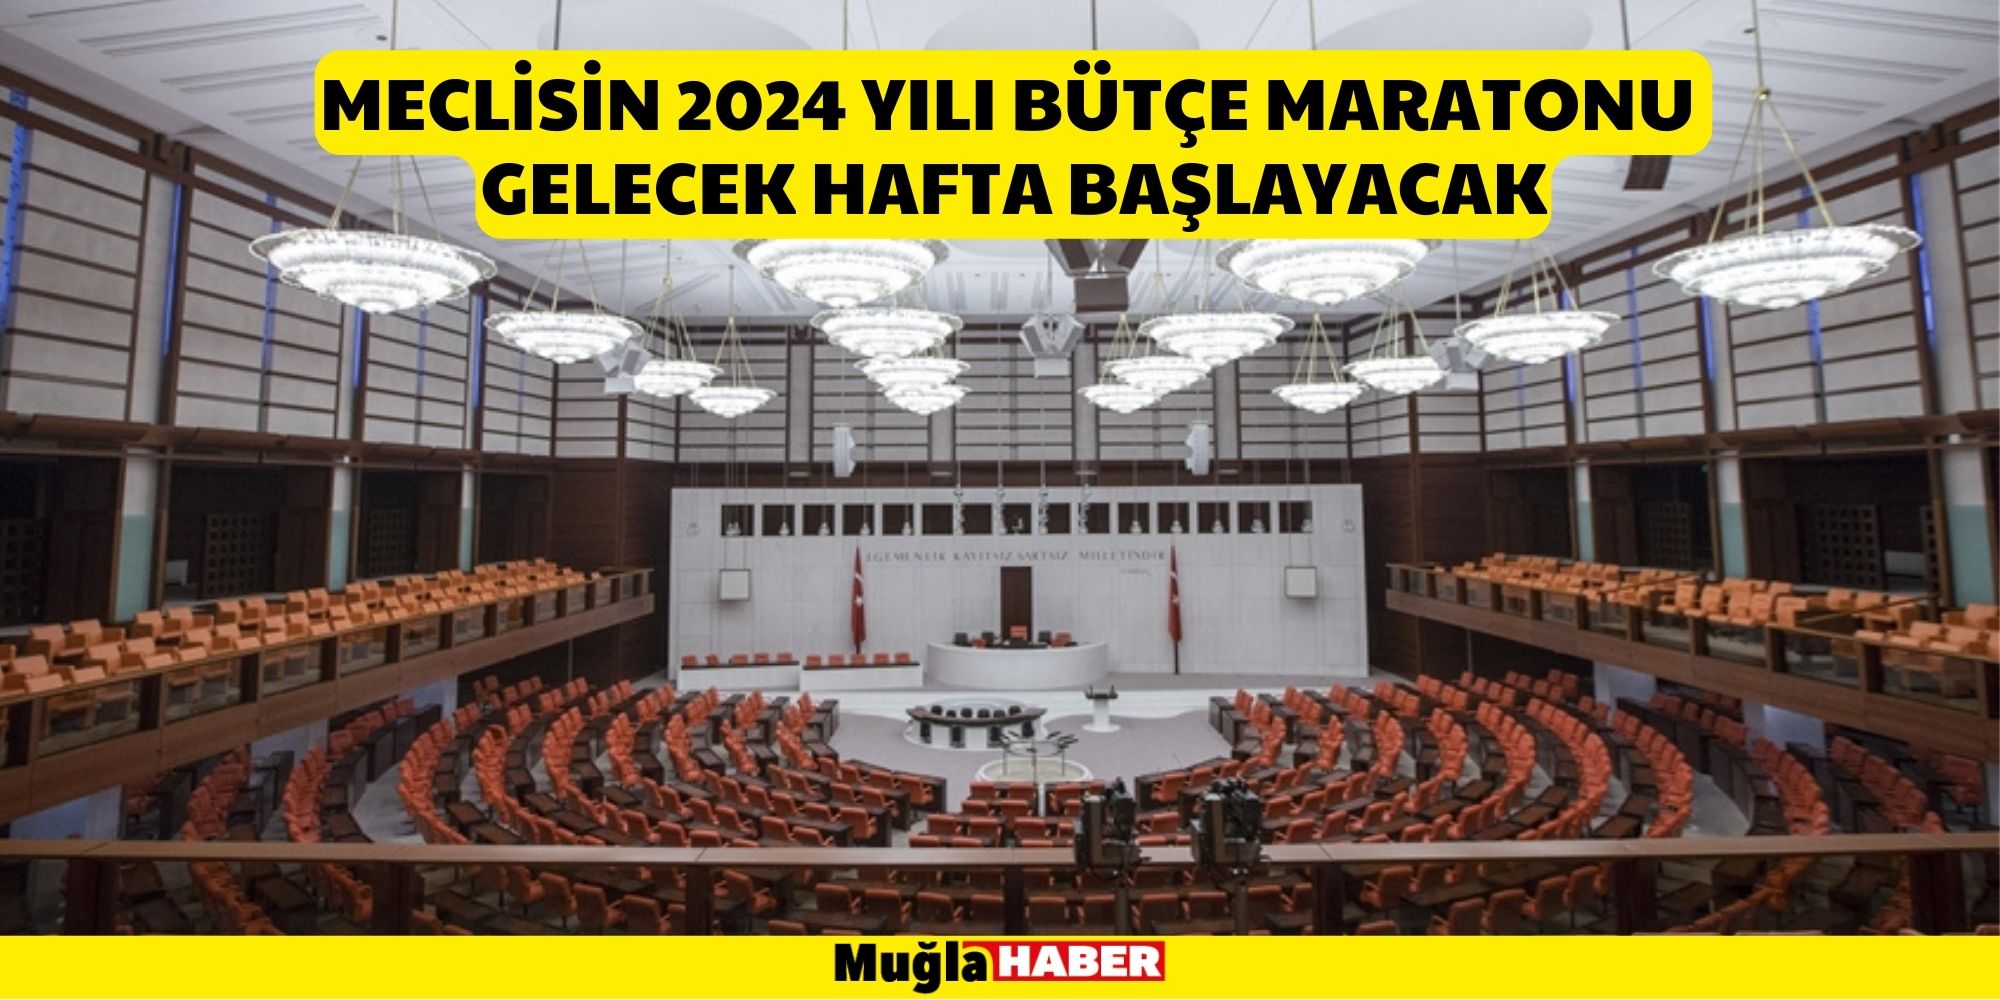 Meclisin 2024 yılı bütçe maratonu gelecek hafta başlayacak